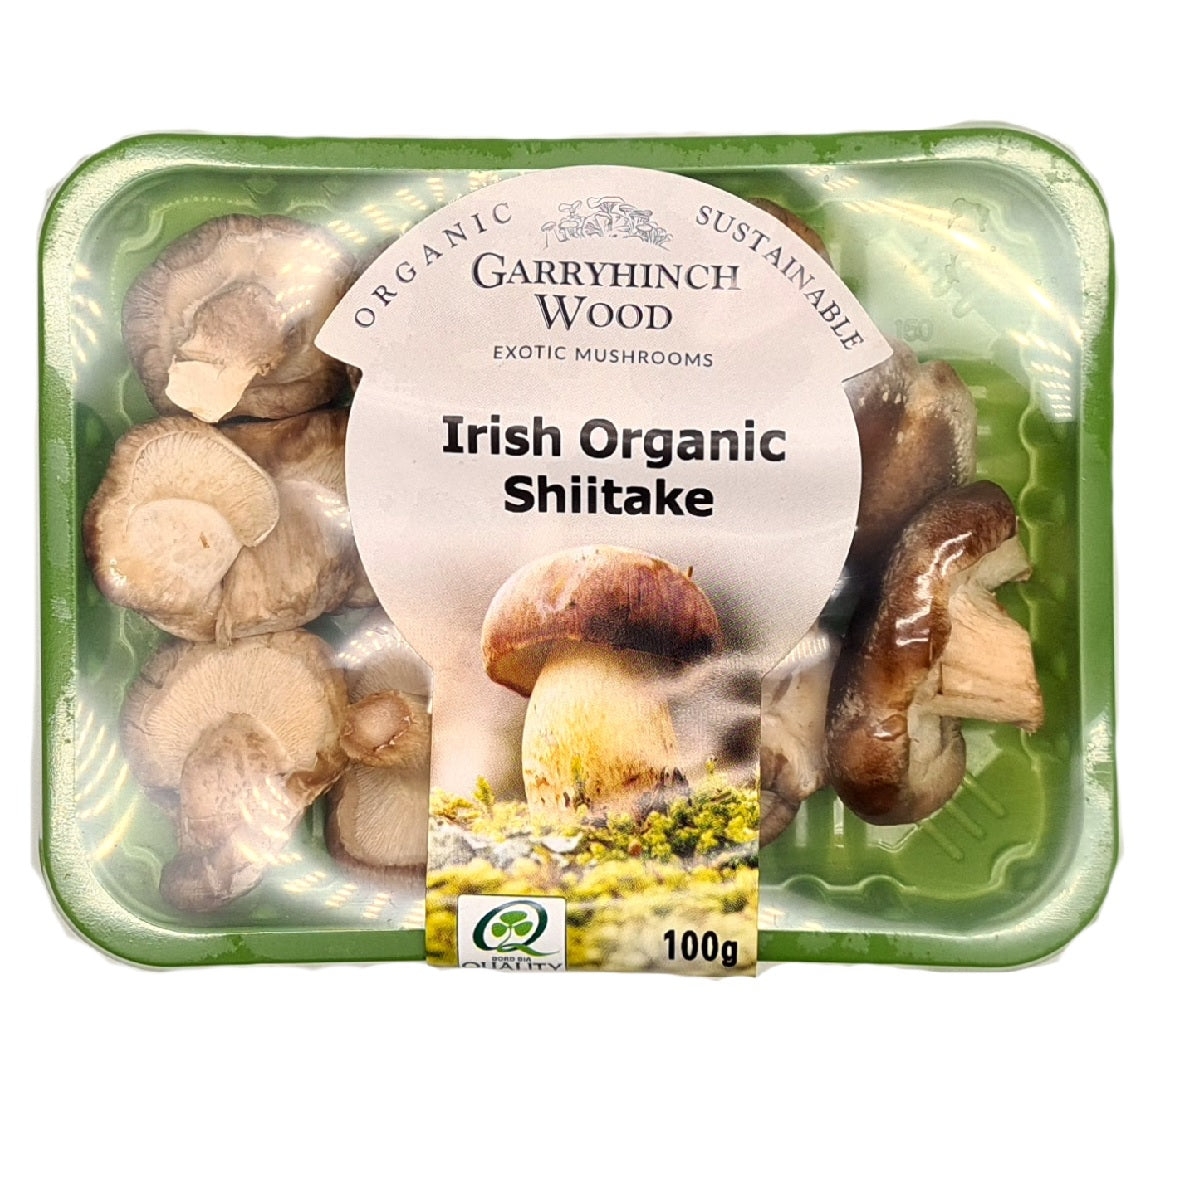 Garryhinch Wood Exotic Mushroom Irish Organic Shiitake 100g